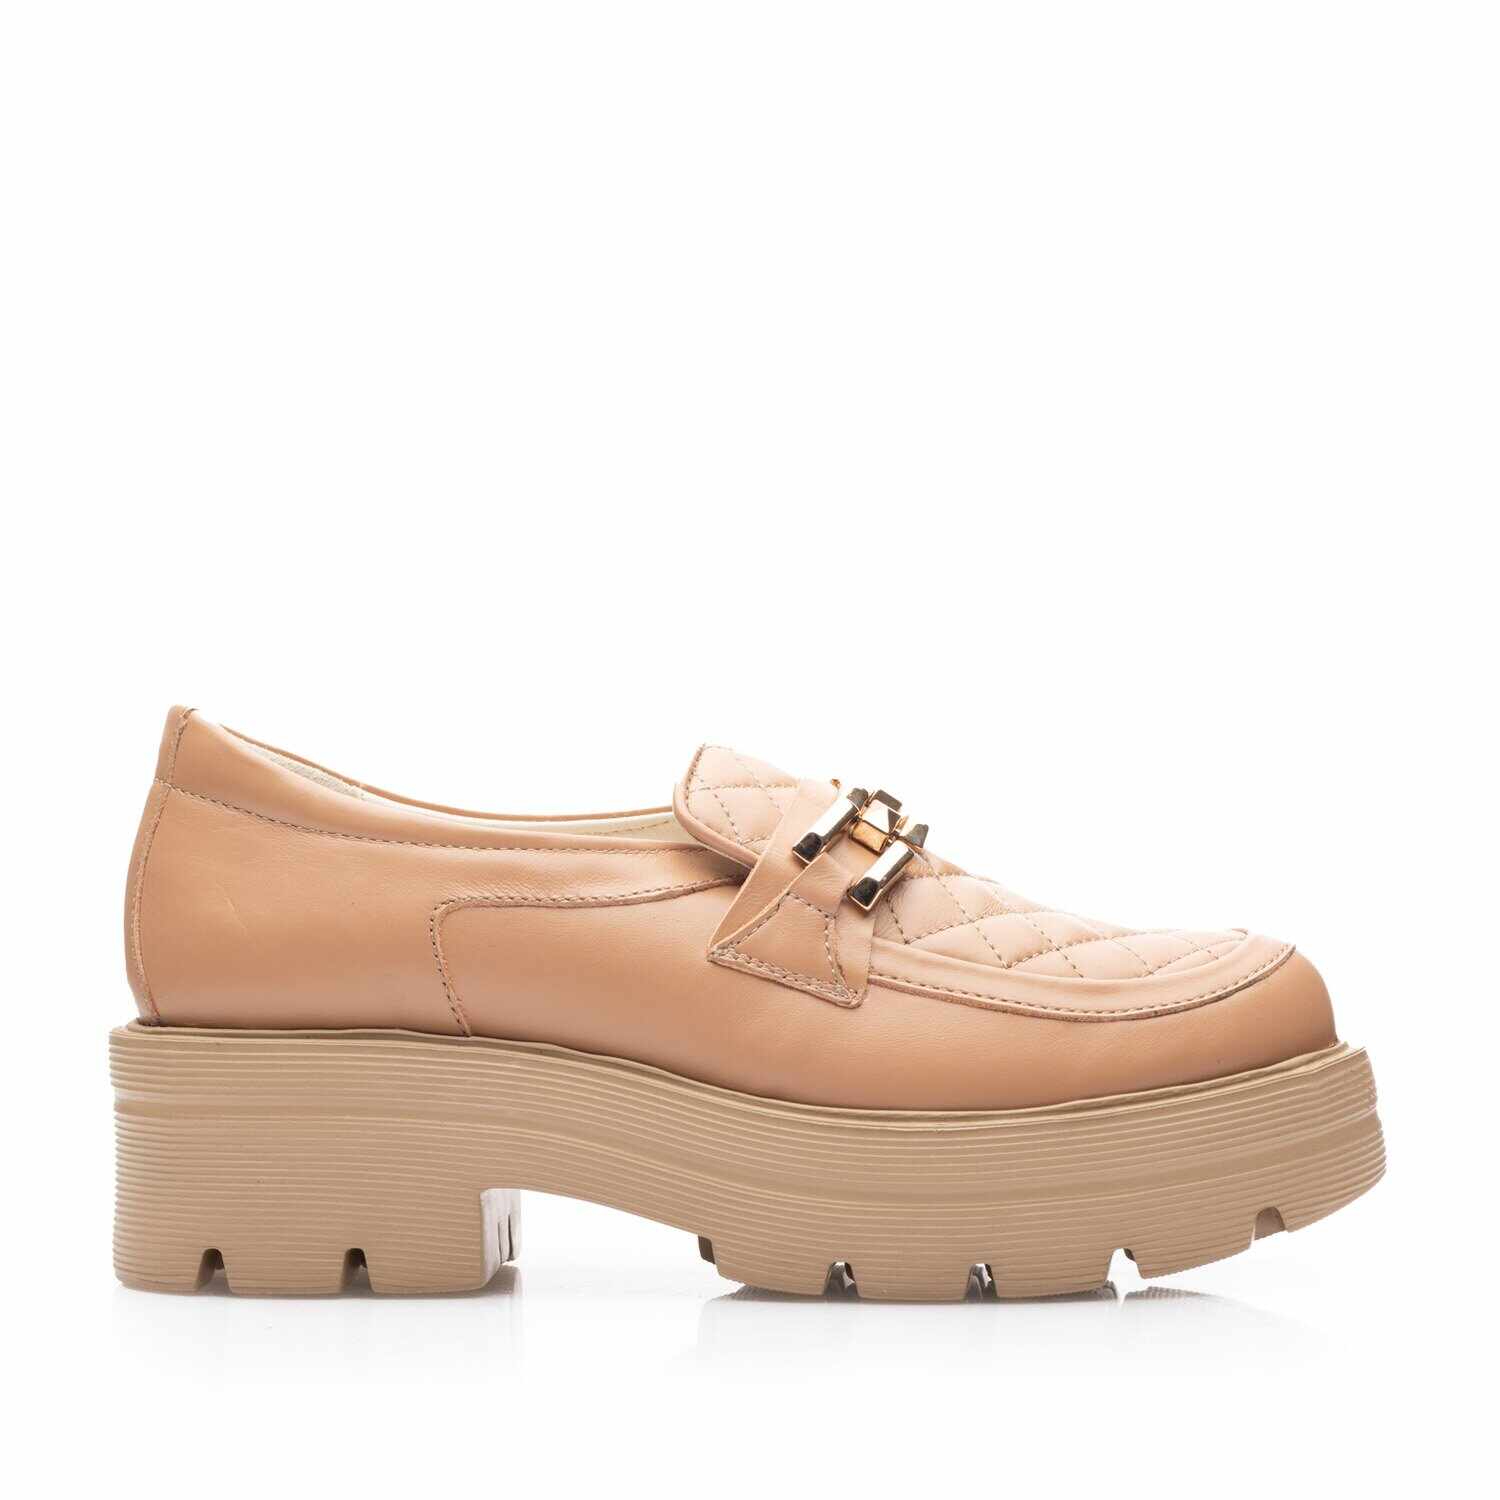 Pantofi casual damă din piele naturală, Leofex - 024-2 Cappuccino Box